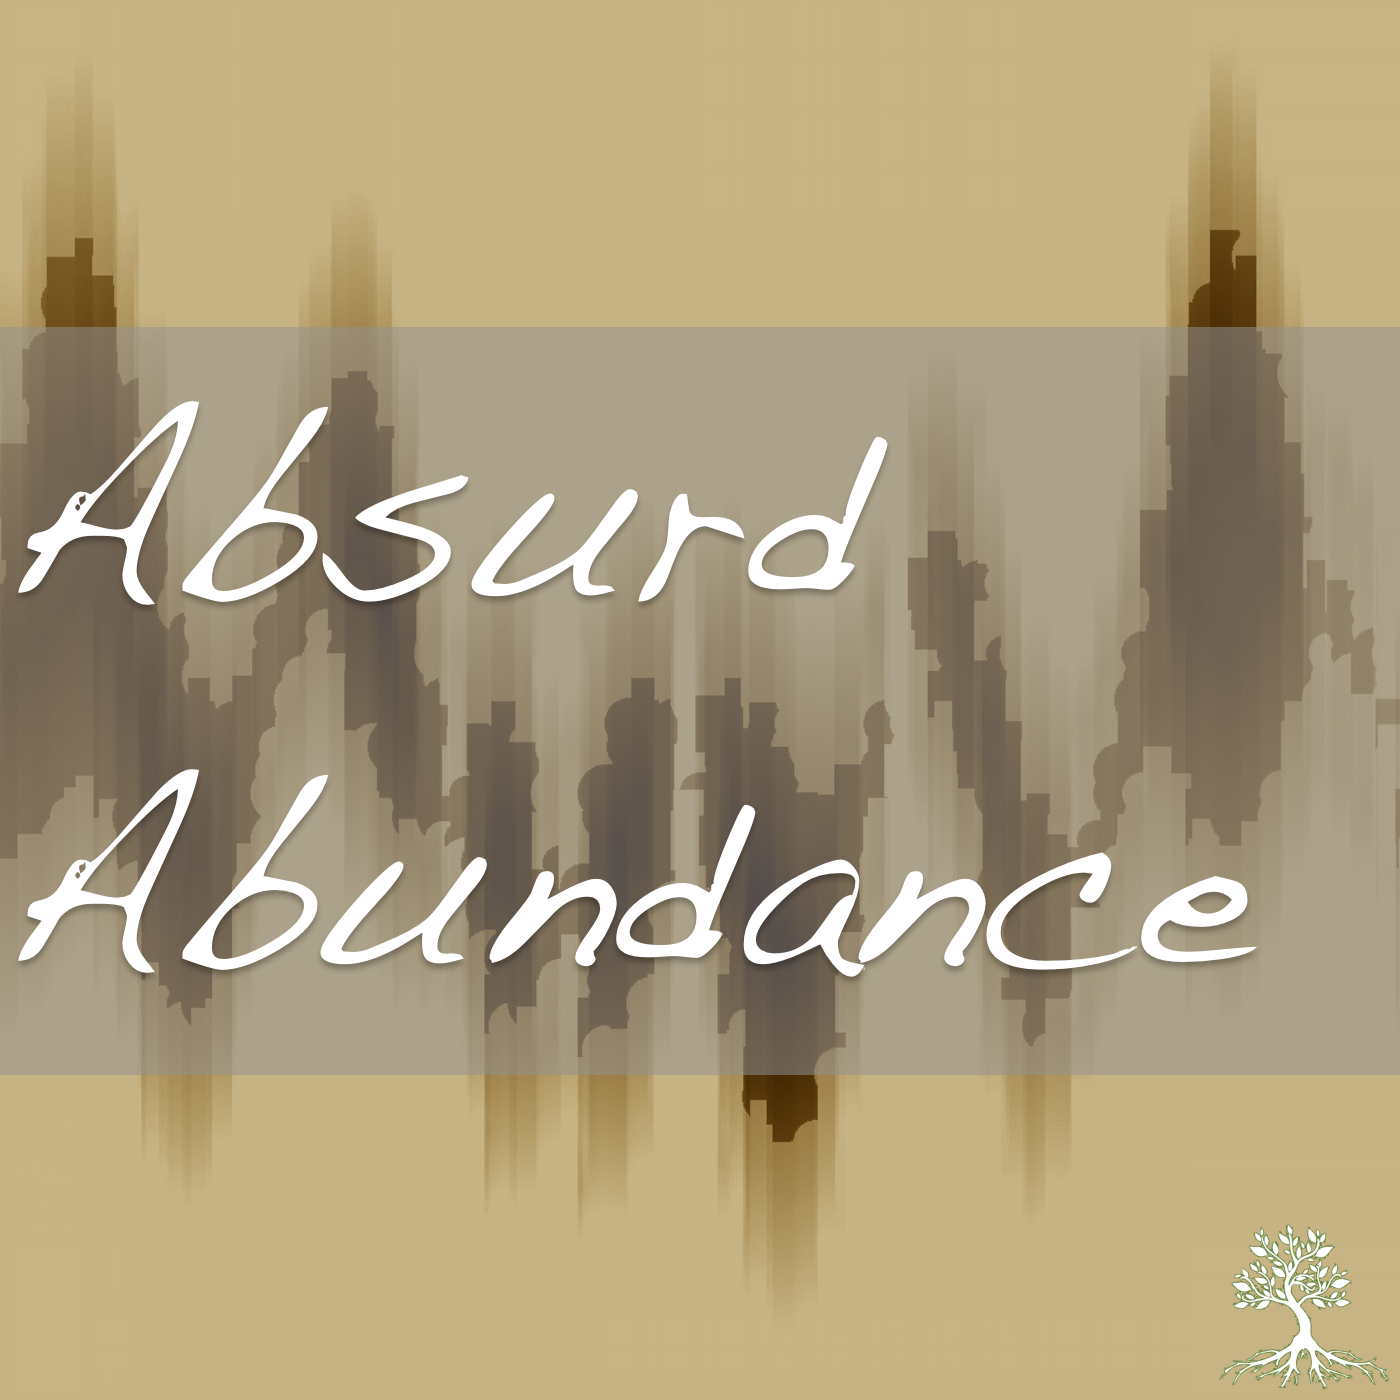 Absurd Abundance (Jodi Houge 6/21/17)